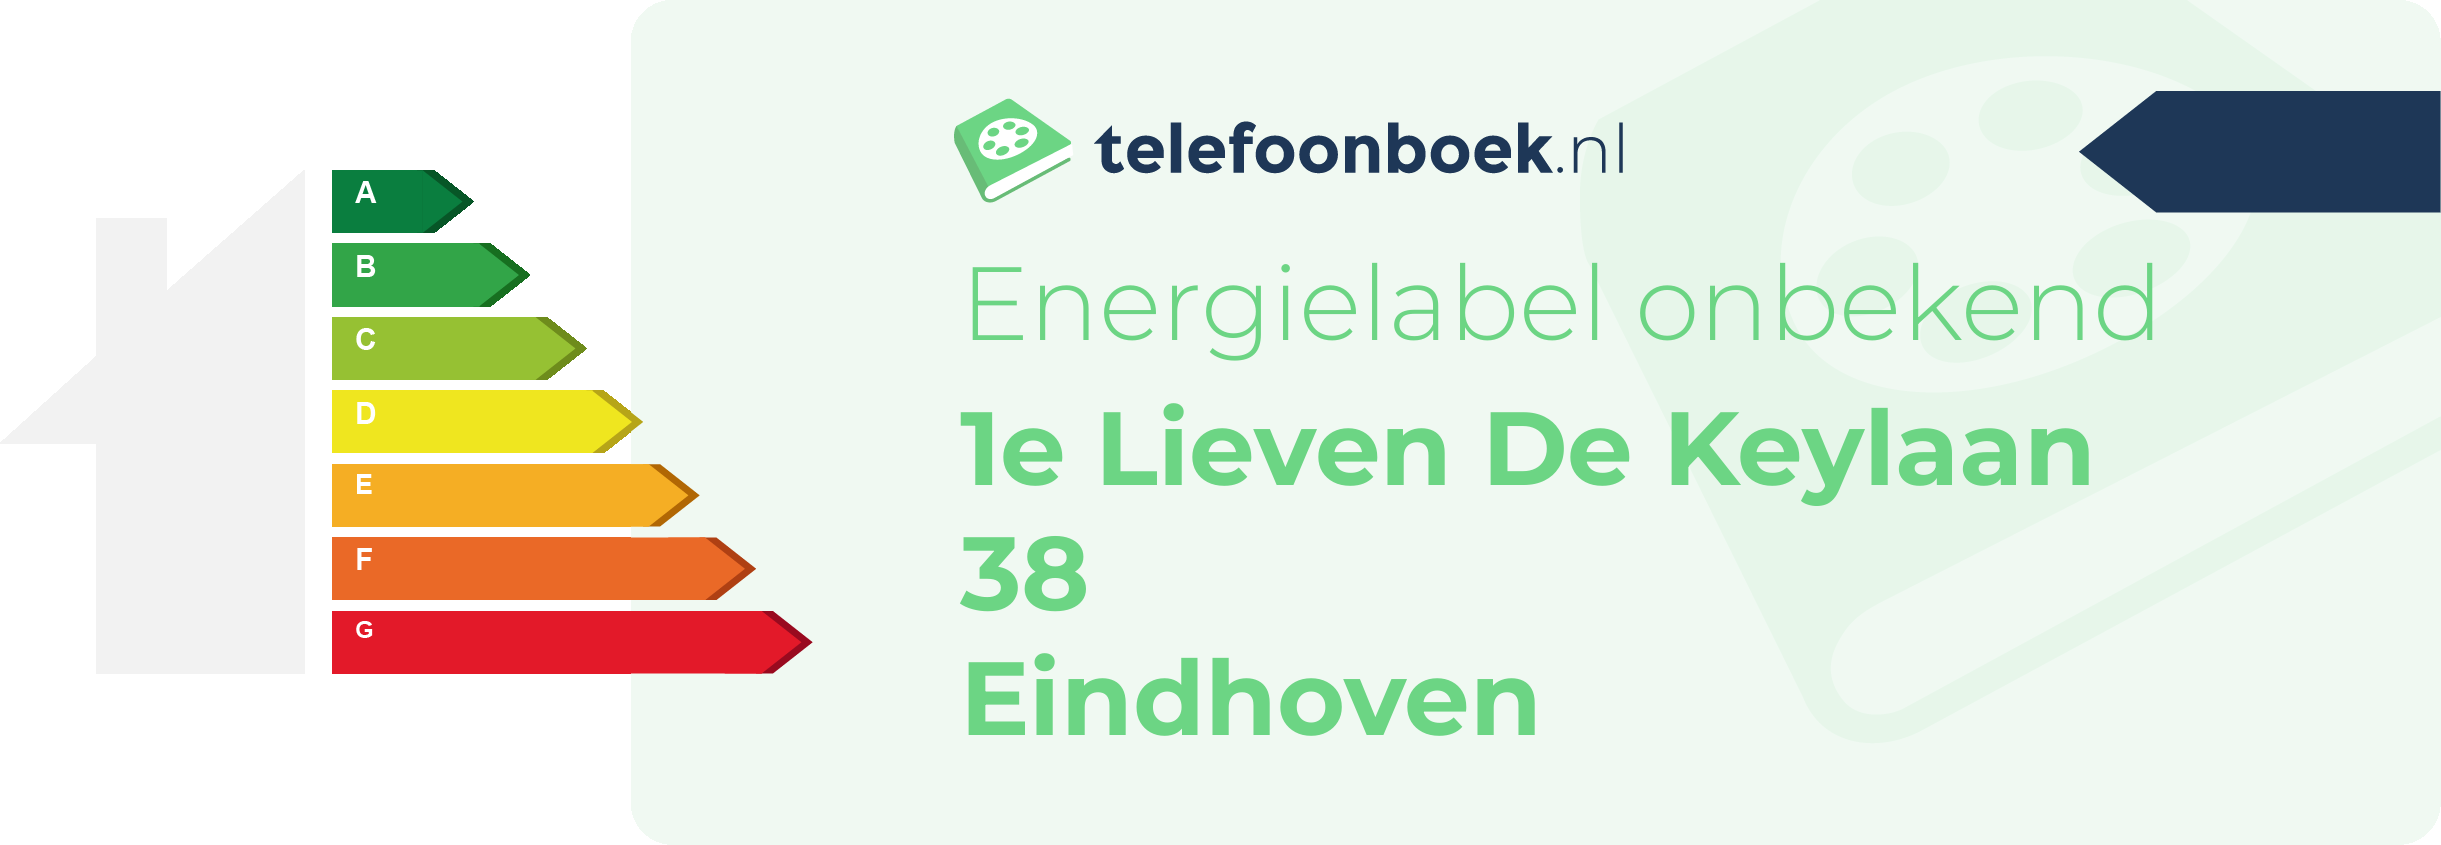 Energielabel 1e Lieven De Keylaan 38 Eindhoven